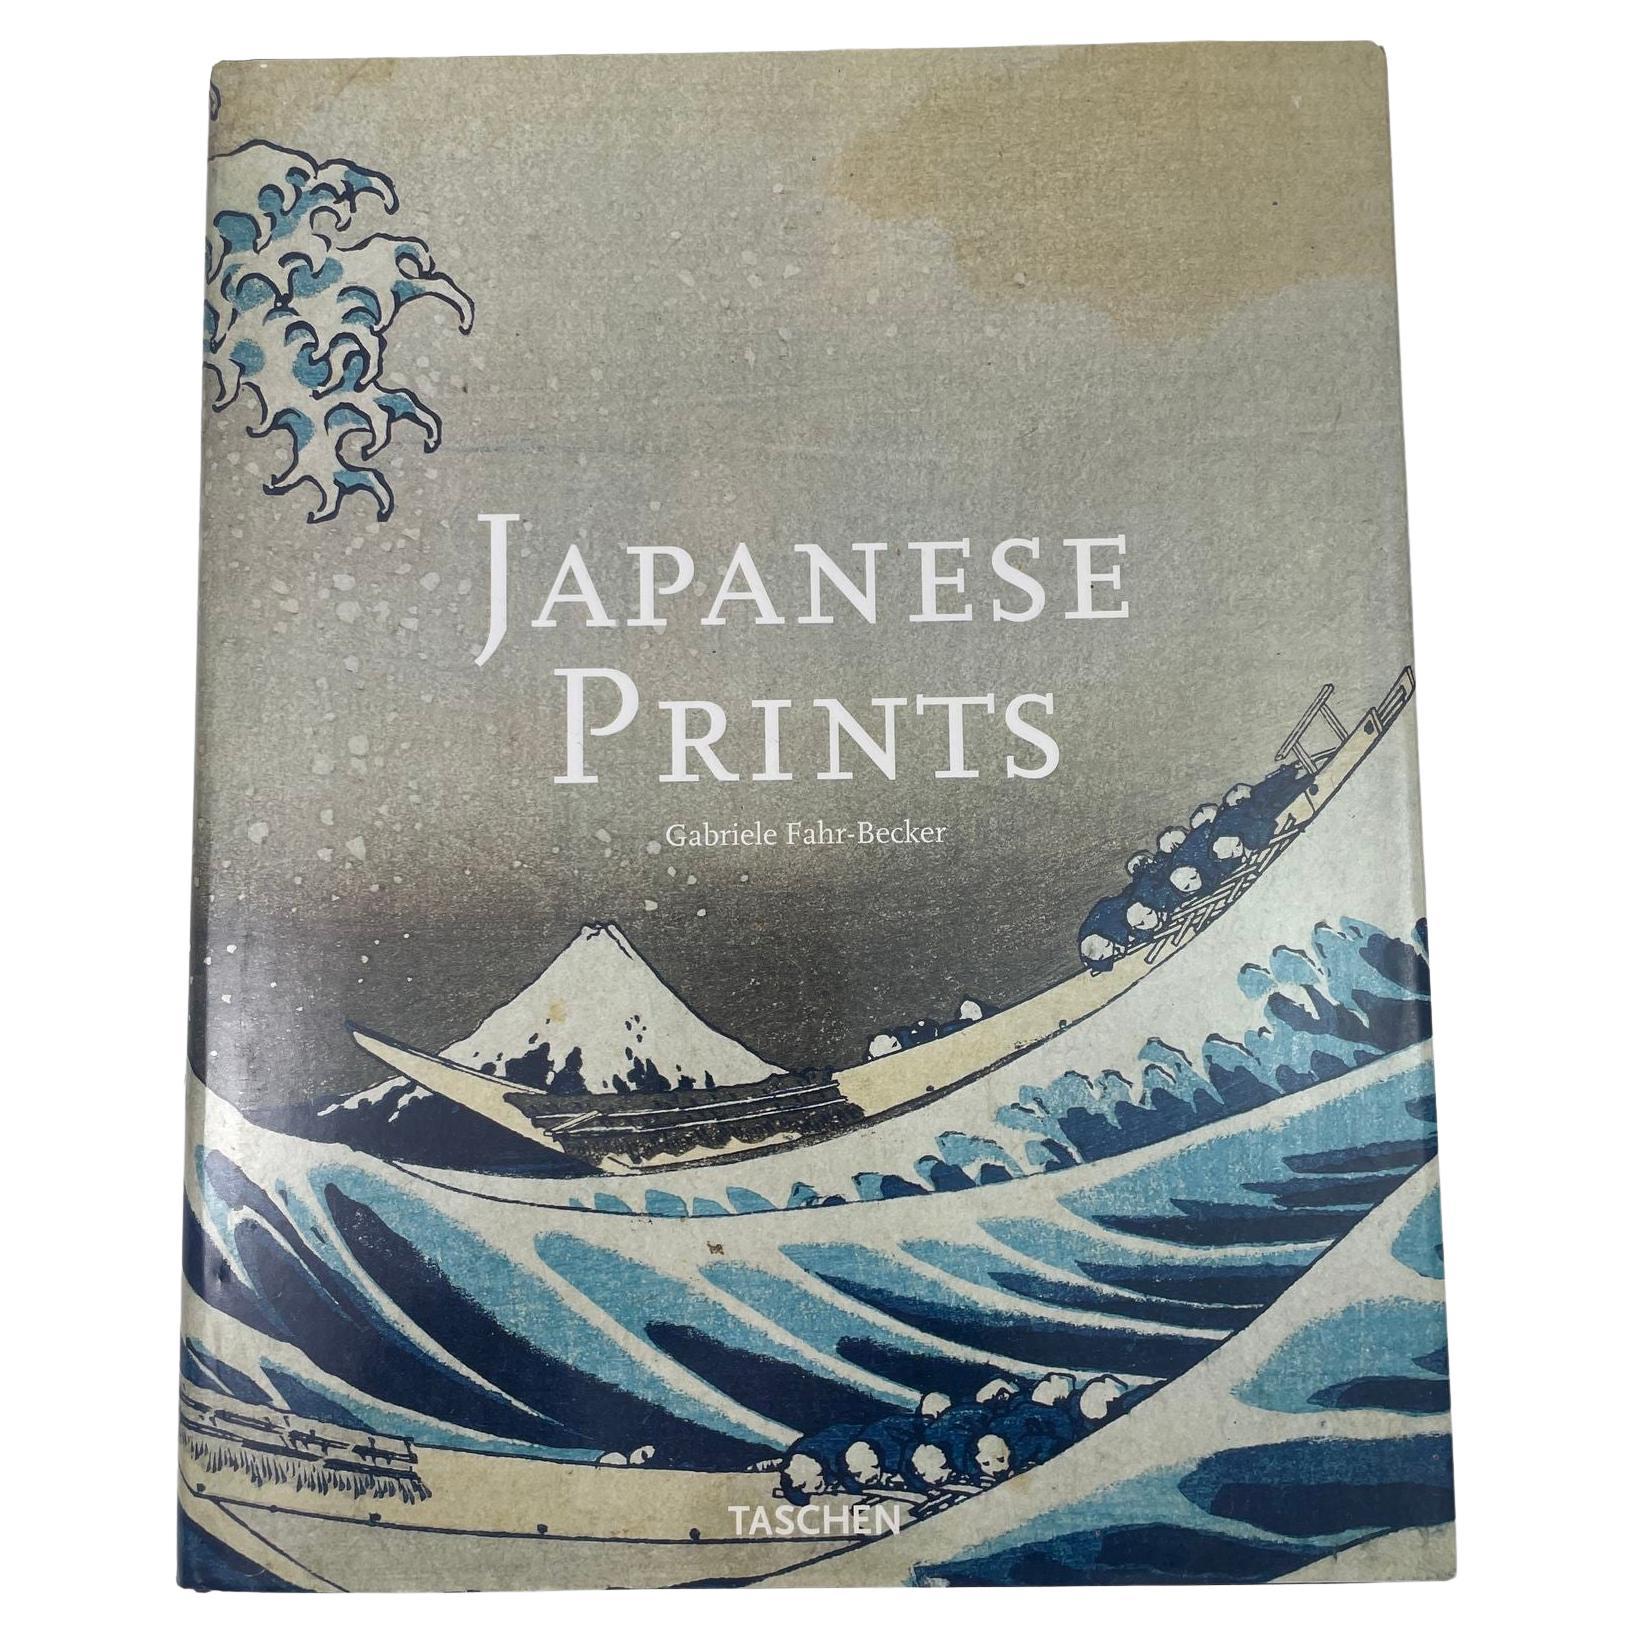 Japanese Prints by Gabriele Fahr-Becker Taschen 1999 For Sale